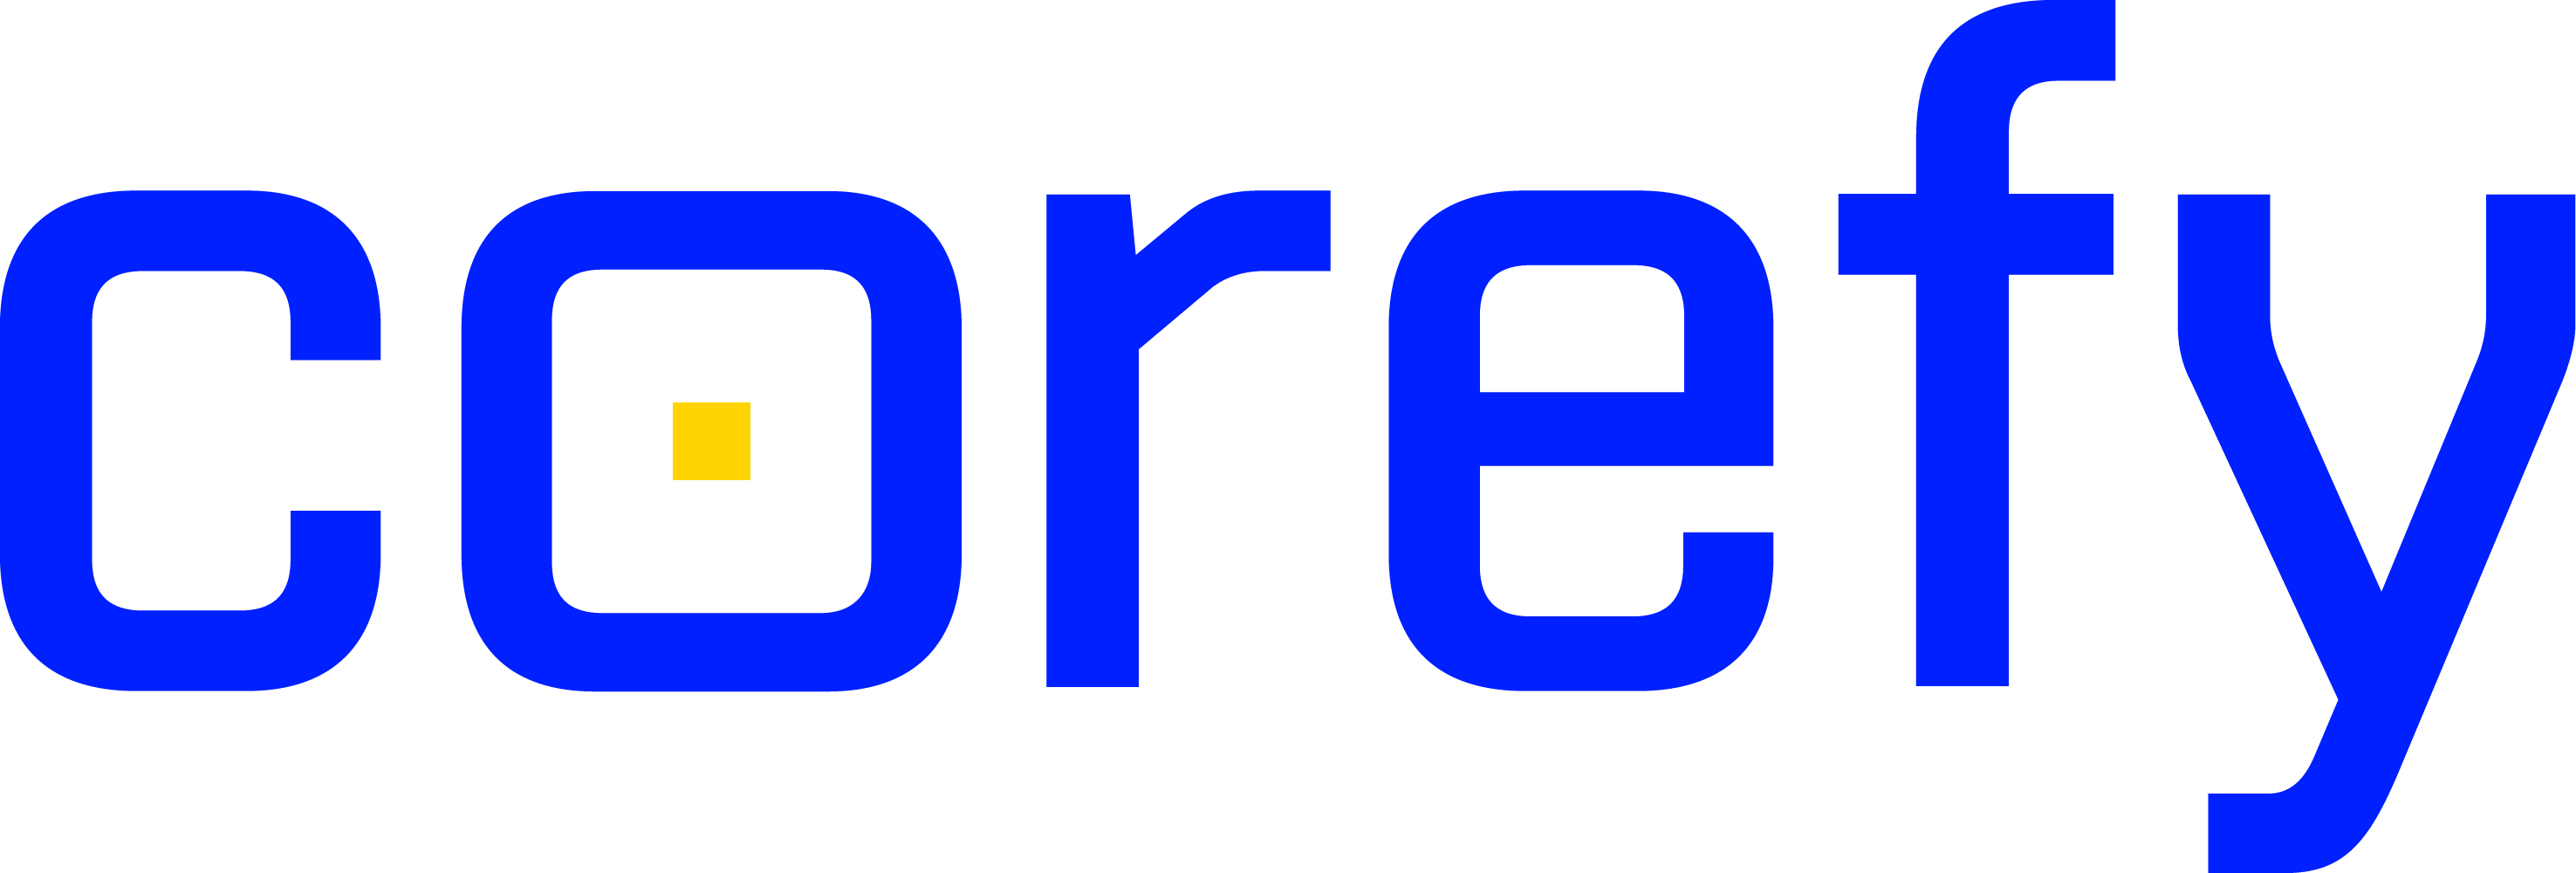 logo principal corefy